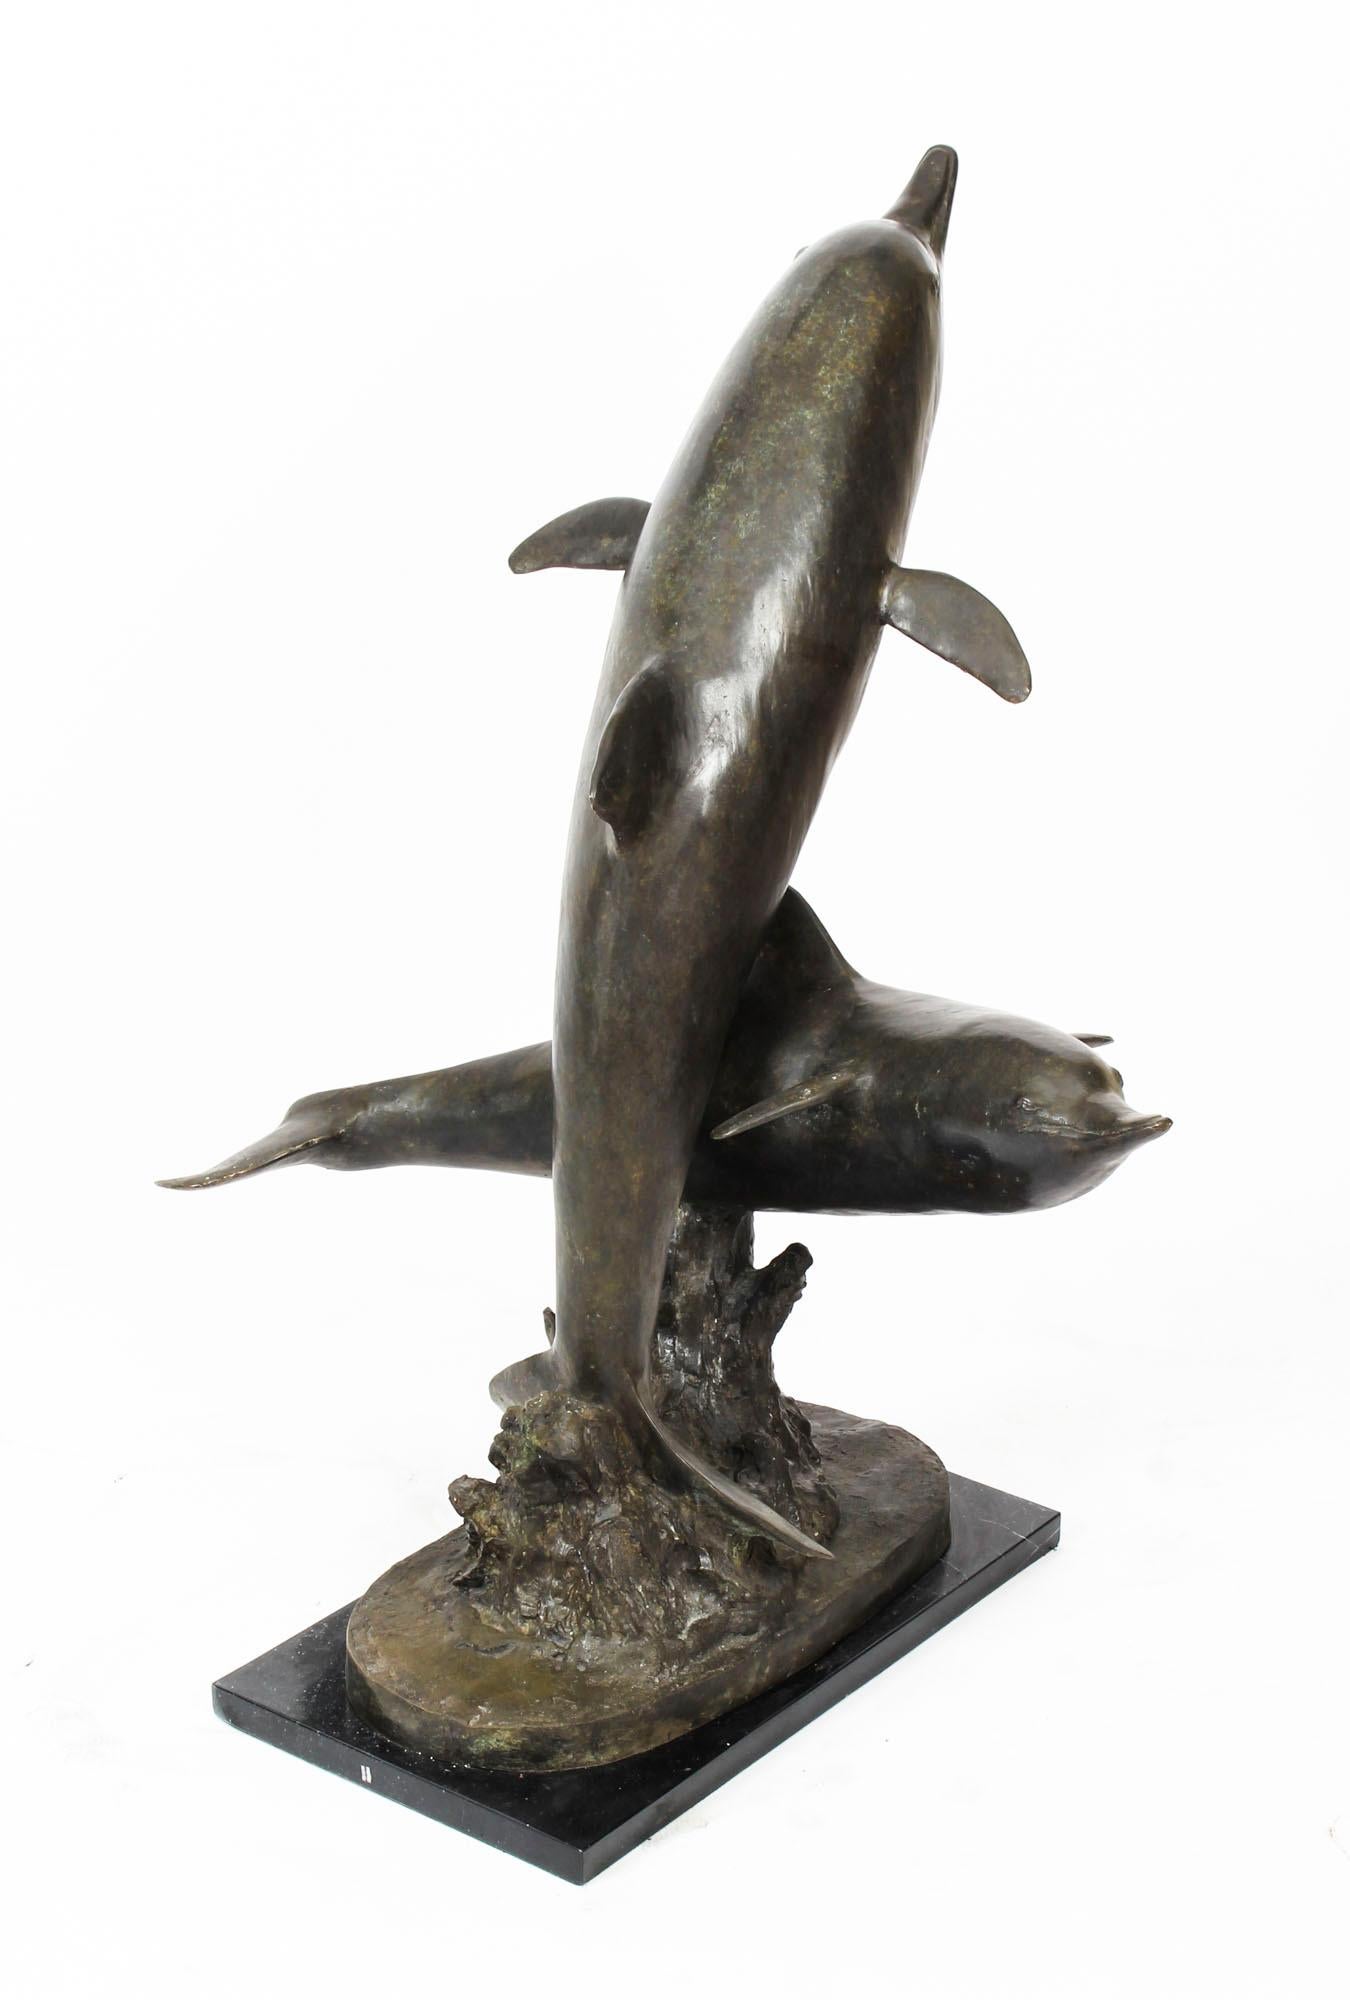 Dies ist eine wunderschöne Vintage-Bronzestatue mit zwei charmanten Delphinen aus dem letzten Viertel des 20.
 
Diese lebensechte Bronzestatue zeigt zwei Delphine, die auf einer Welle reiten. Sie stehen senkrecht zueinander und haben ihre